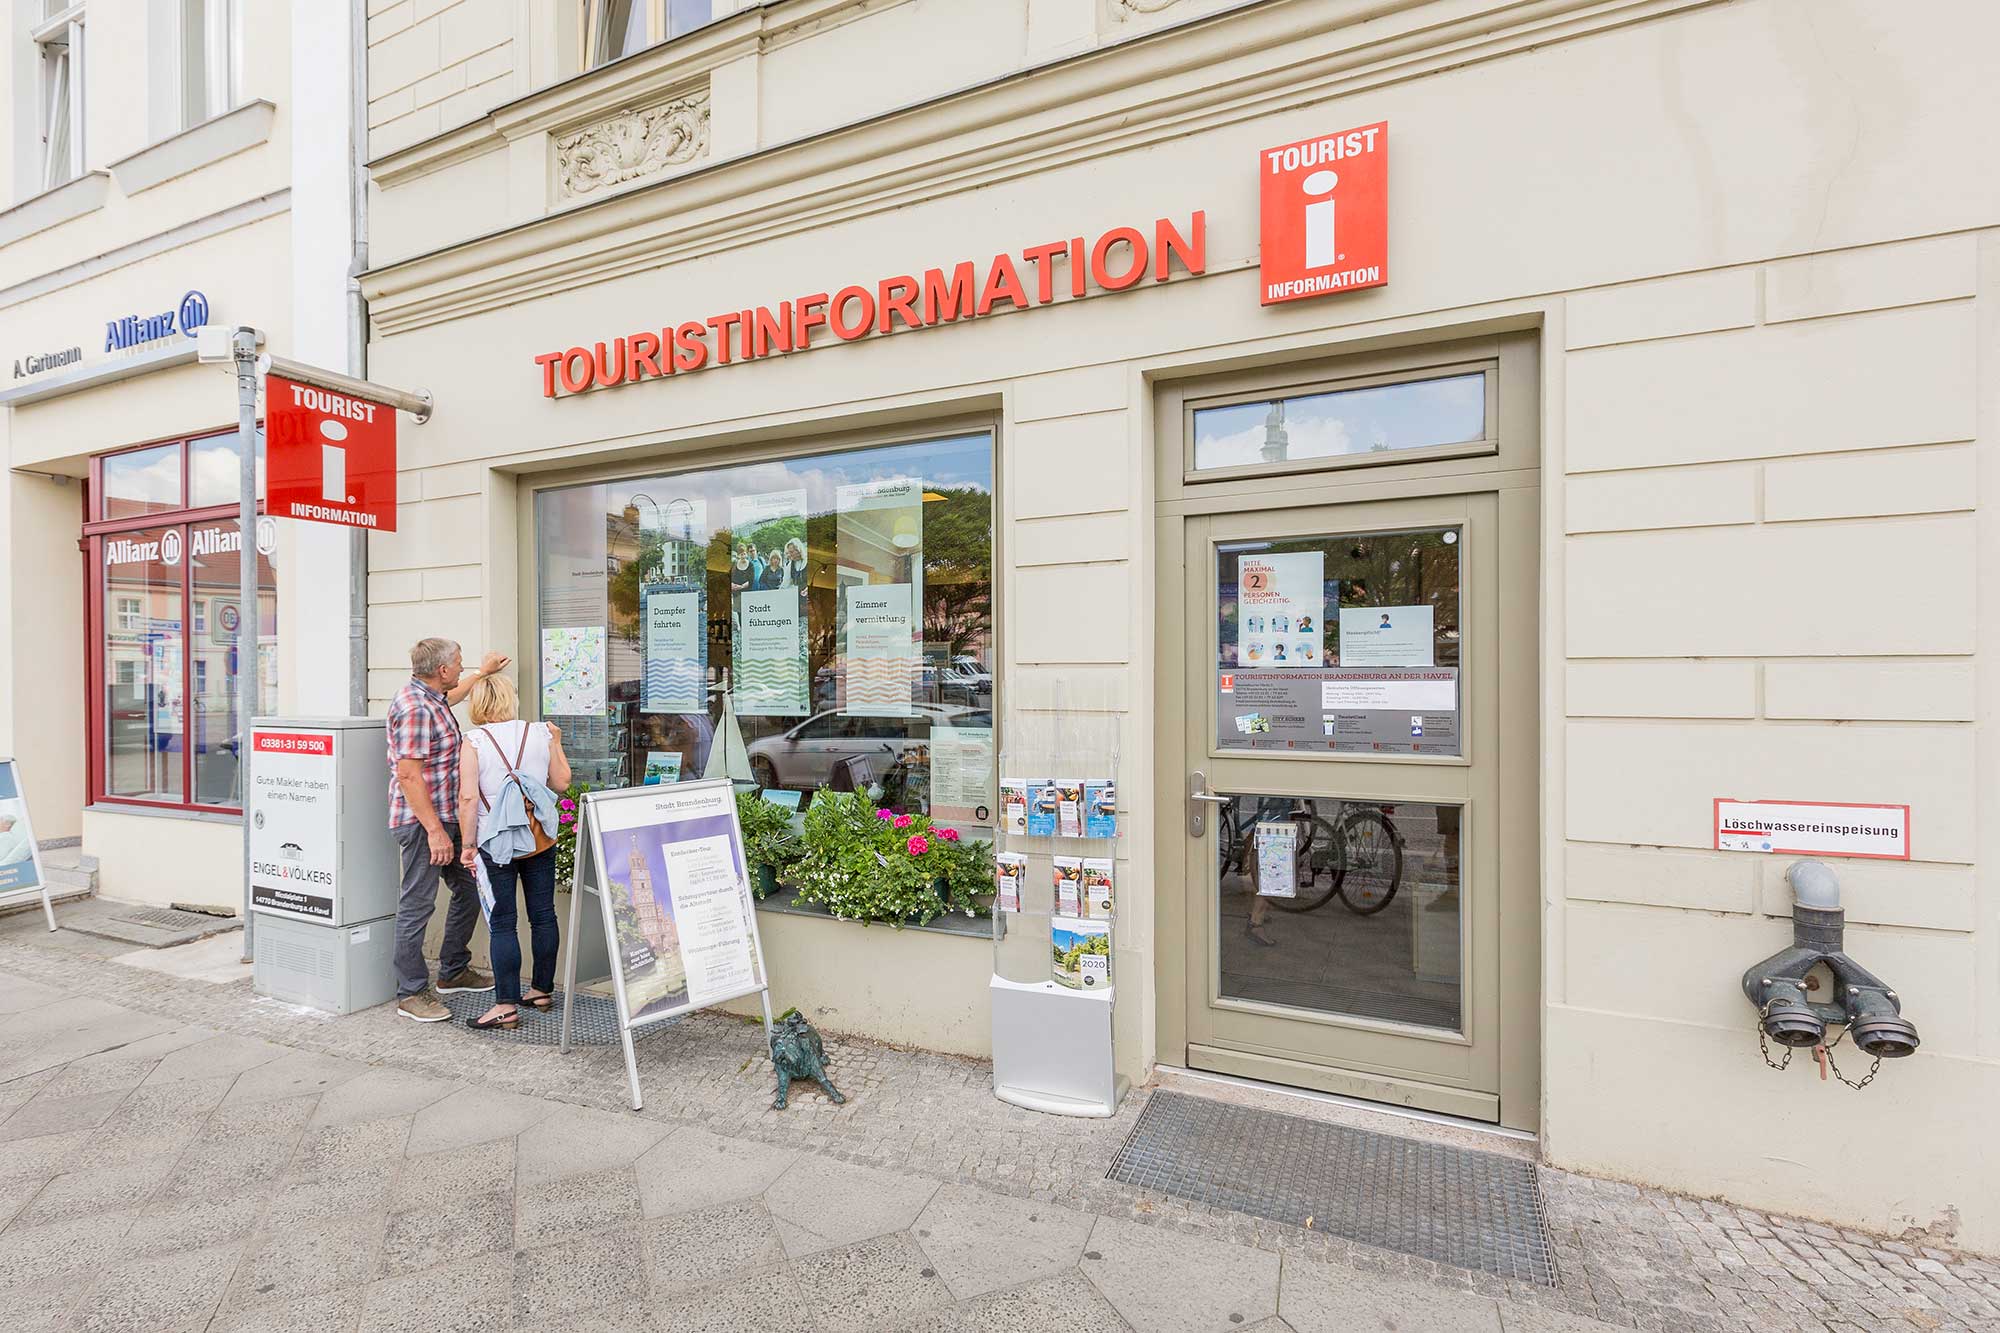 STG - Stadtmarketing- & Tourismusgesellschaft in the Sankt Annen Galerie Brandenburg